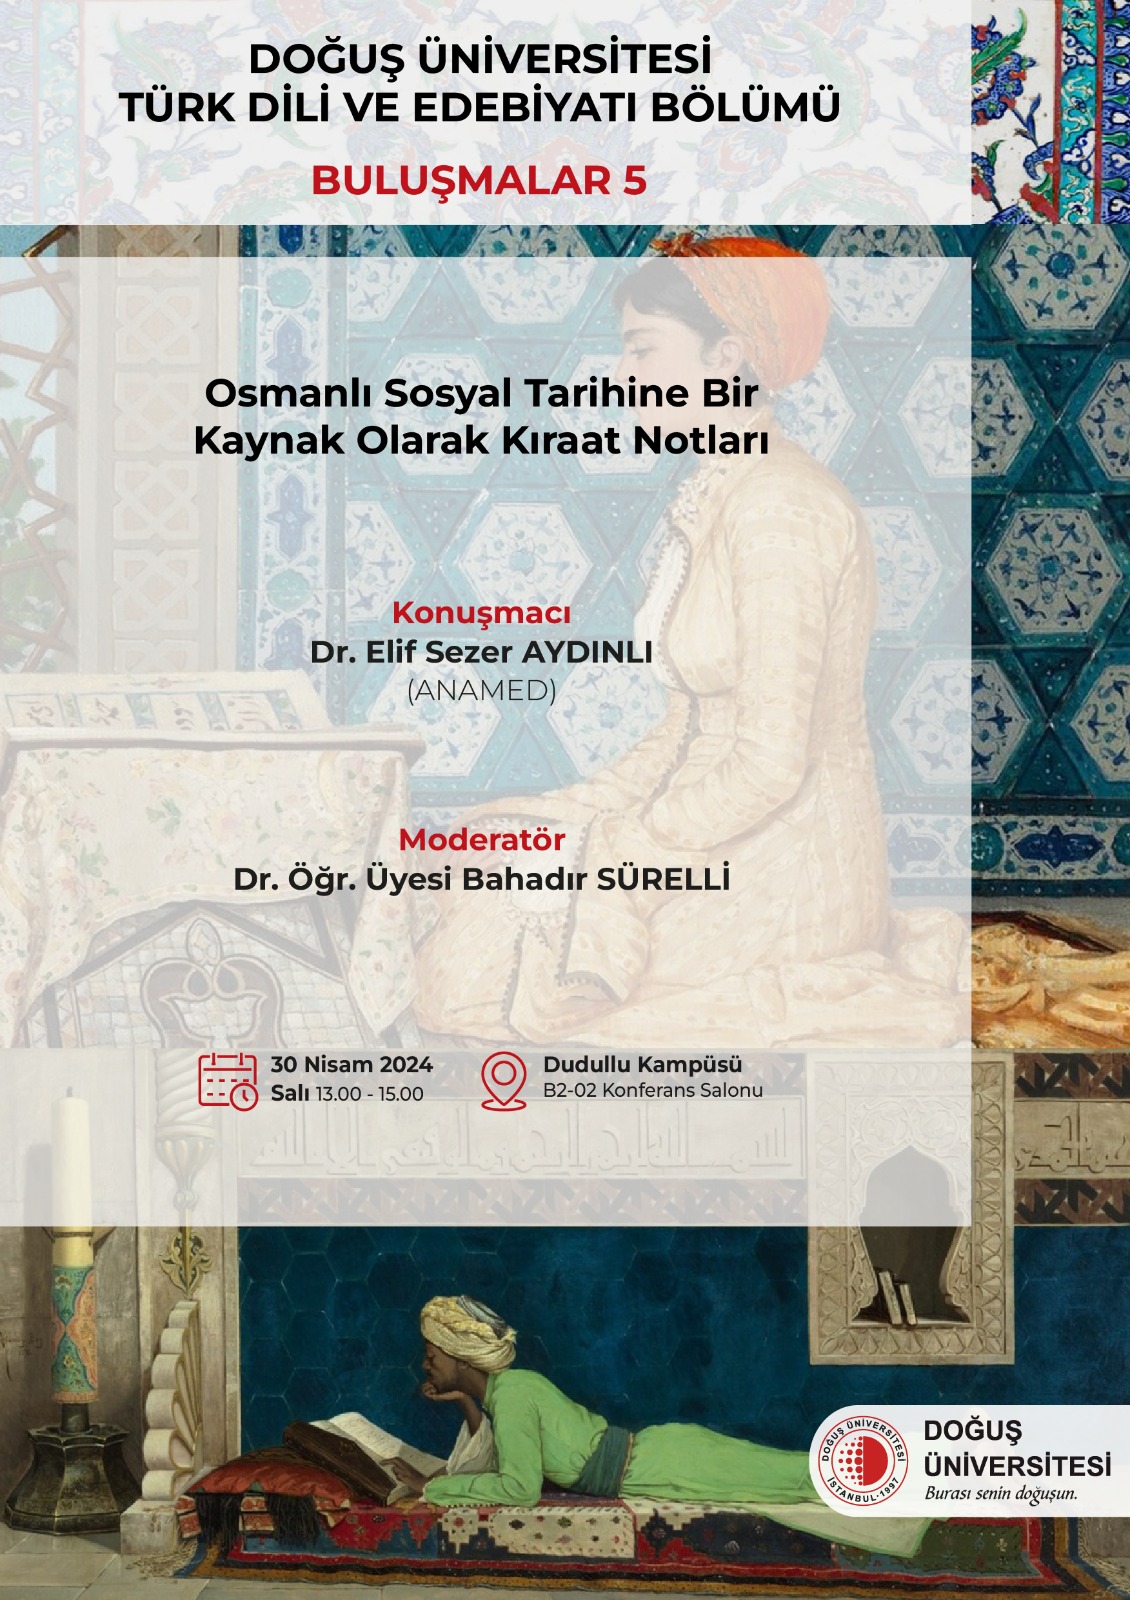 Türk Dili ve Edebiyatı Bölümünün 30 Nisan Tarihli Konferans Etkinliğİ